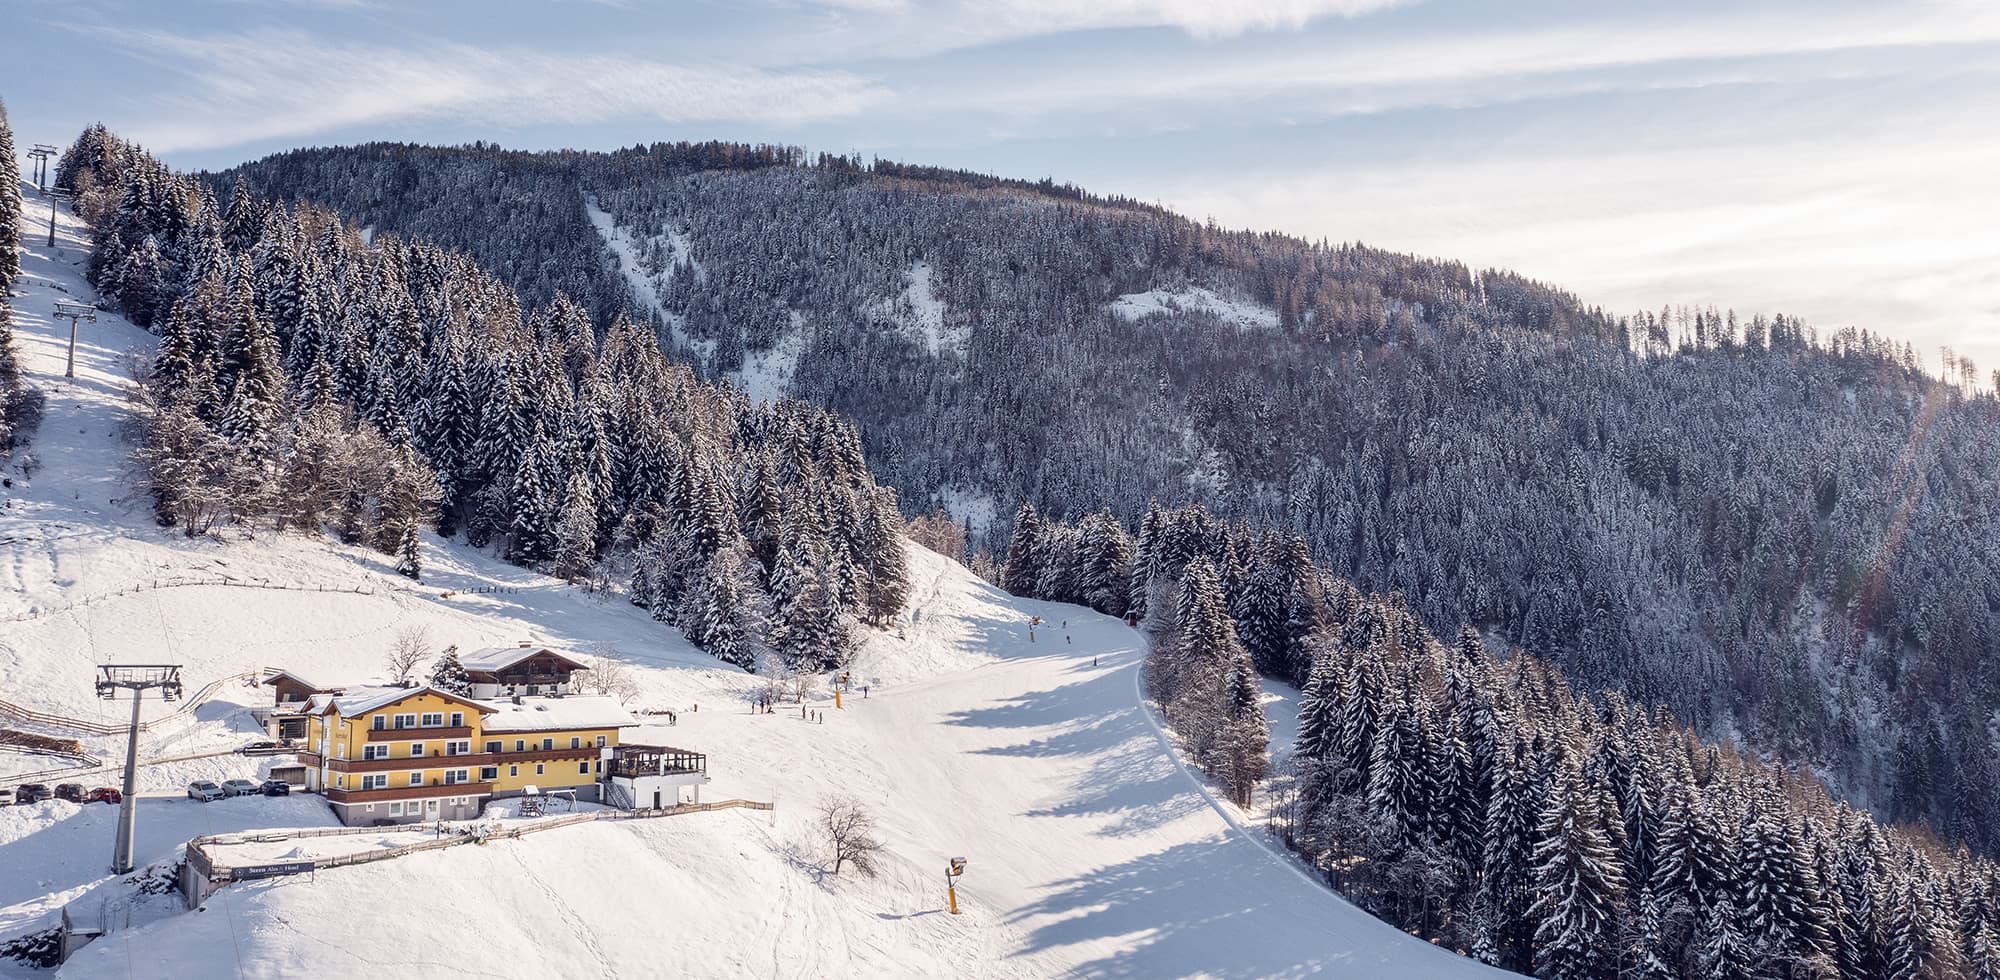 Skiurlaub im Snow Space Salzburg mitten in Ski amadé im Hotel Stern direkt an der Piste im Alpendorf